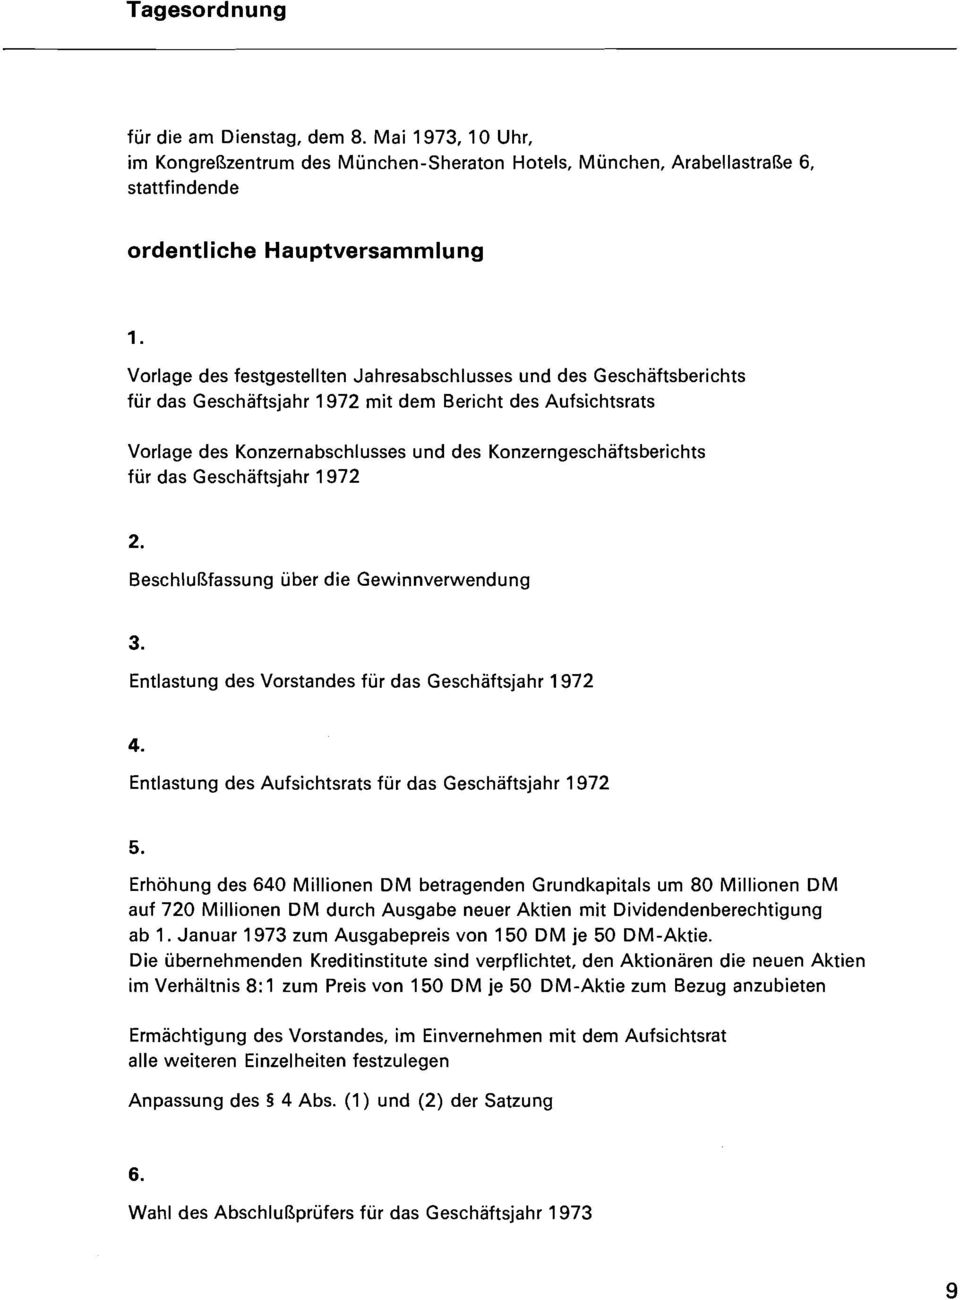 Geschäftsberichts für das Geschäftsjahr 1972 mit dem Bericht des Aufsichtsrats Vorlage des Konzernabschlusses und des Konzerngeschäftsberichts für das Geschäftsjahr 1972 2.